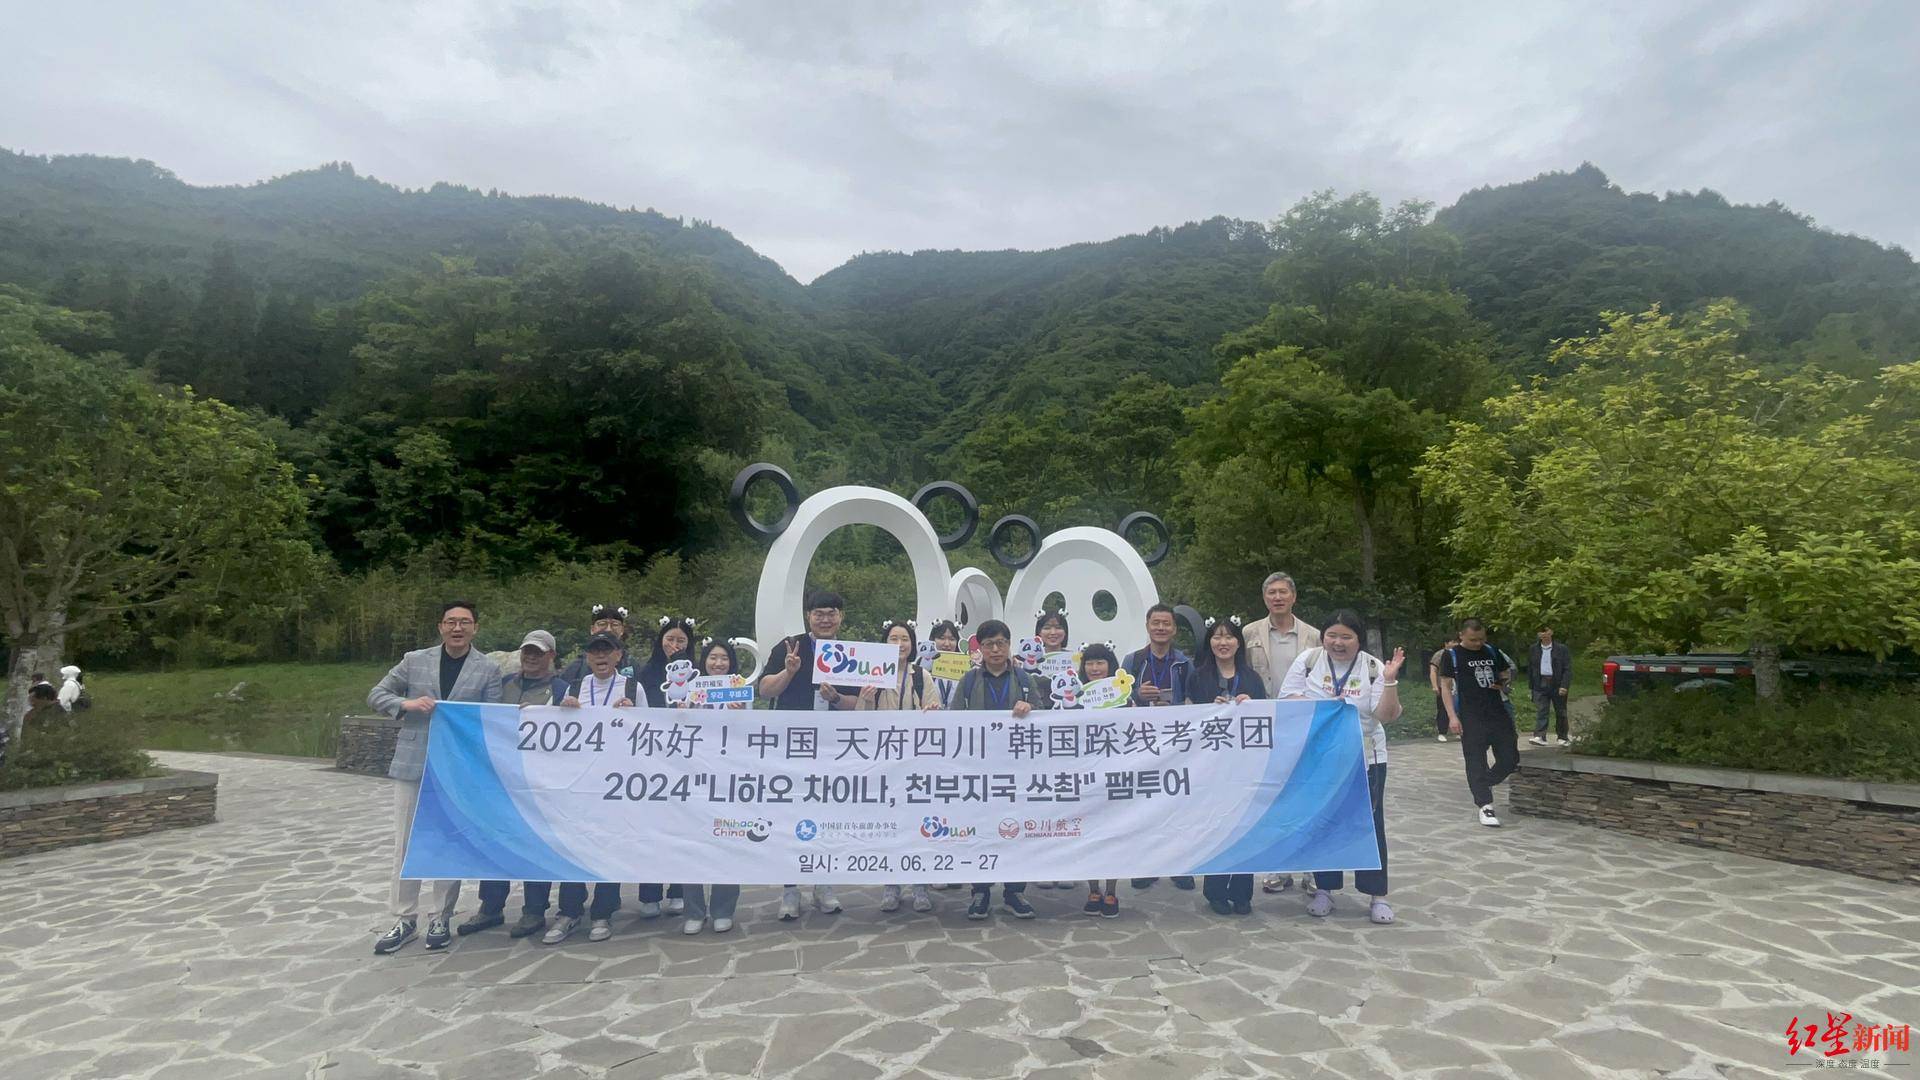   韩国旅游圈派团到四川考察，设计主题旅游线路:想让更多韩国人看到“富宝”。